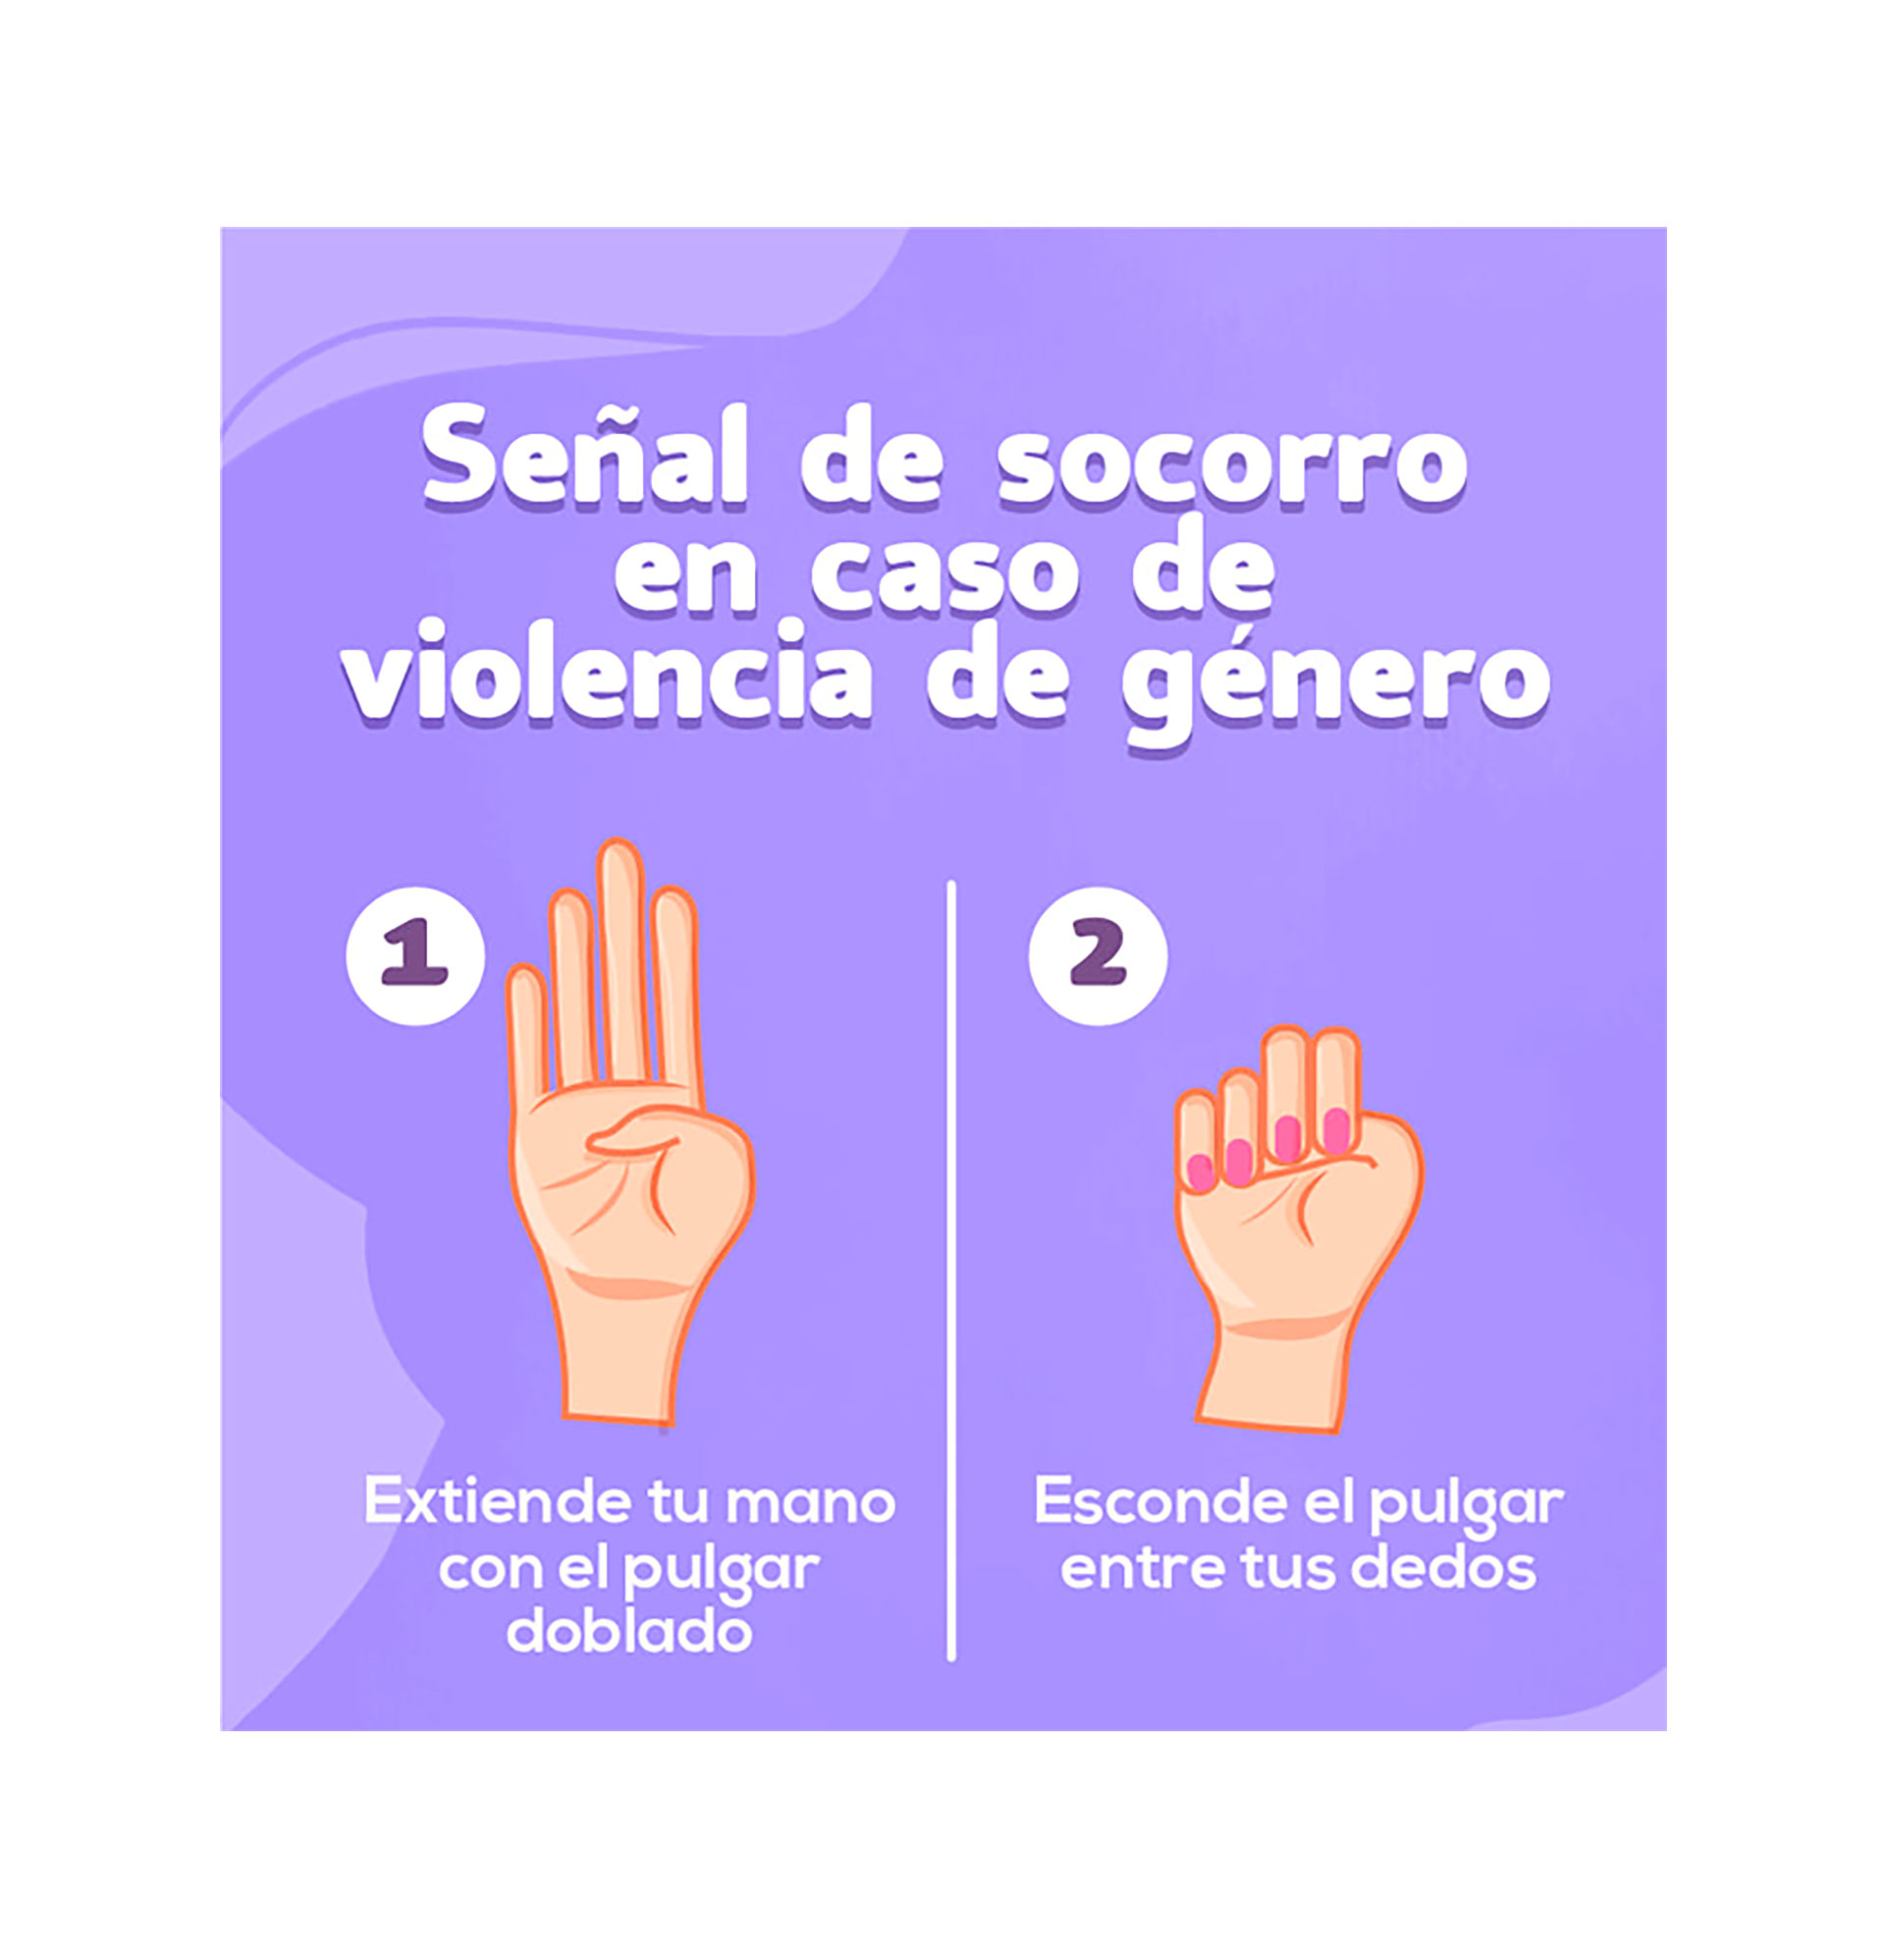 Infografía que muestra cómo se realiza la seña utilizada para alertar de situaciones de violencia de género